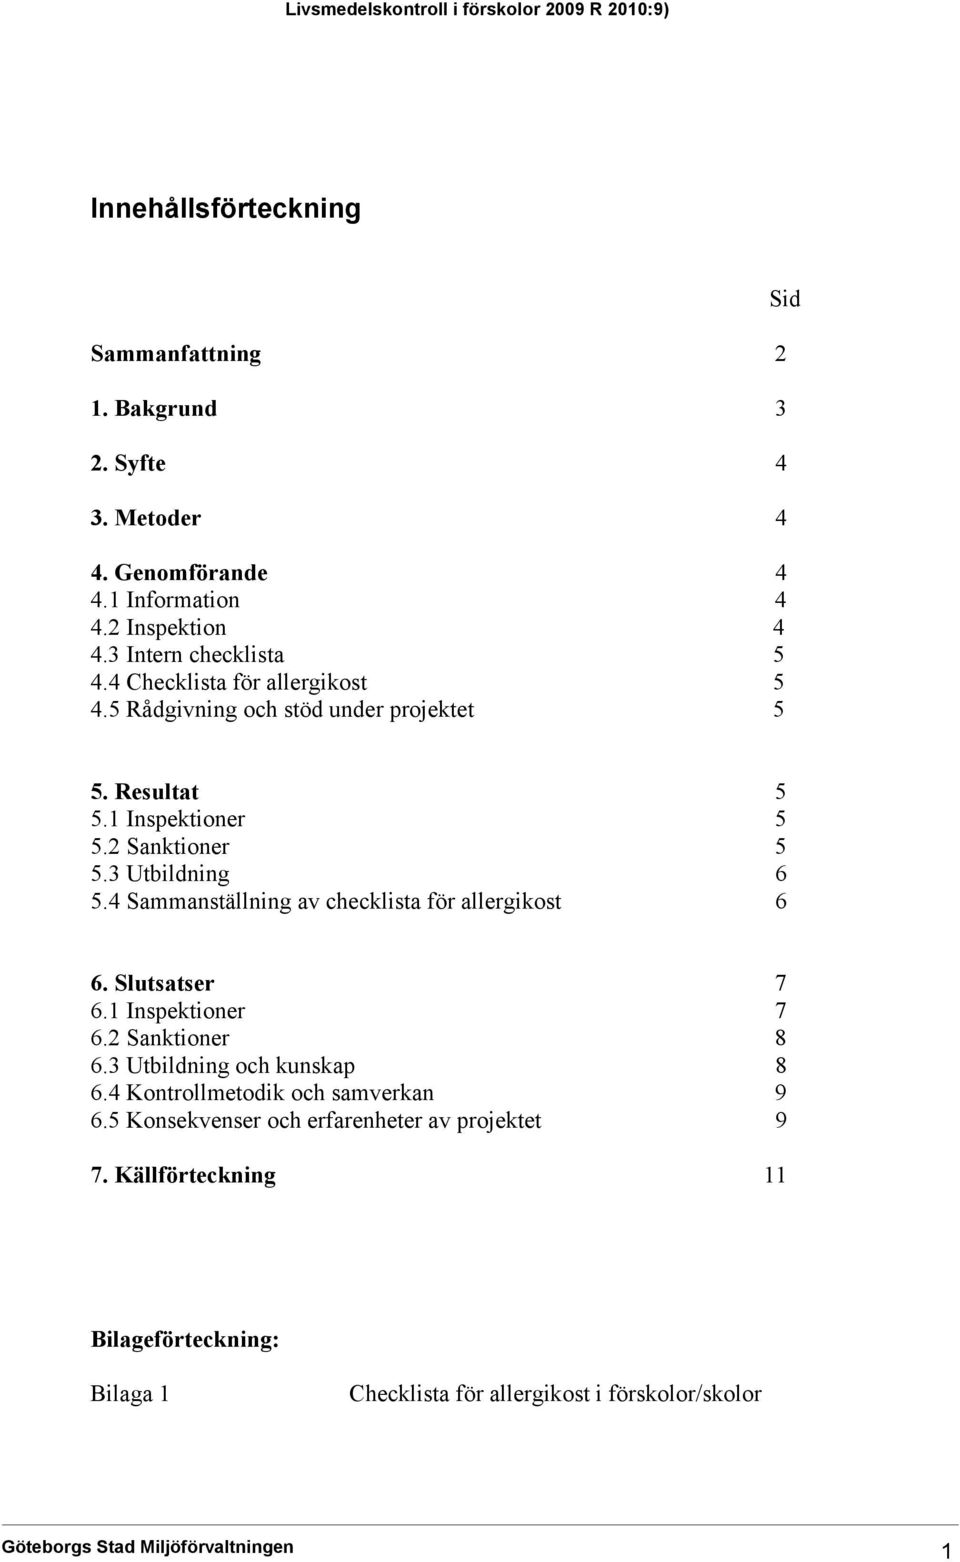 3 Utbildning 6 5.4 Sammanställning av checklista för allergikost 6 6. Slutsatser 7 6.1 Inspektioner 7 6.2 Sanktioner 8 6.3 Utbildning och kunskap 8 6.